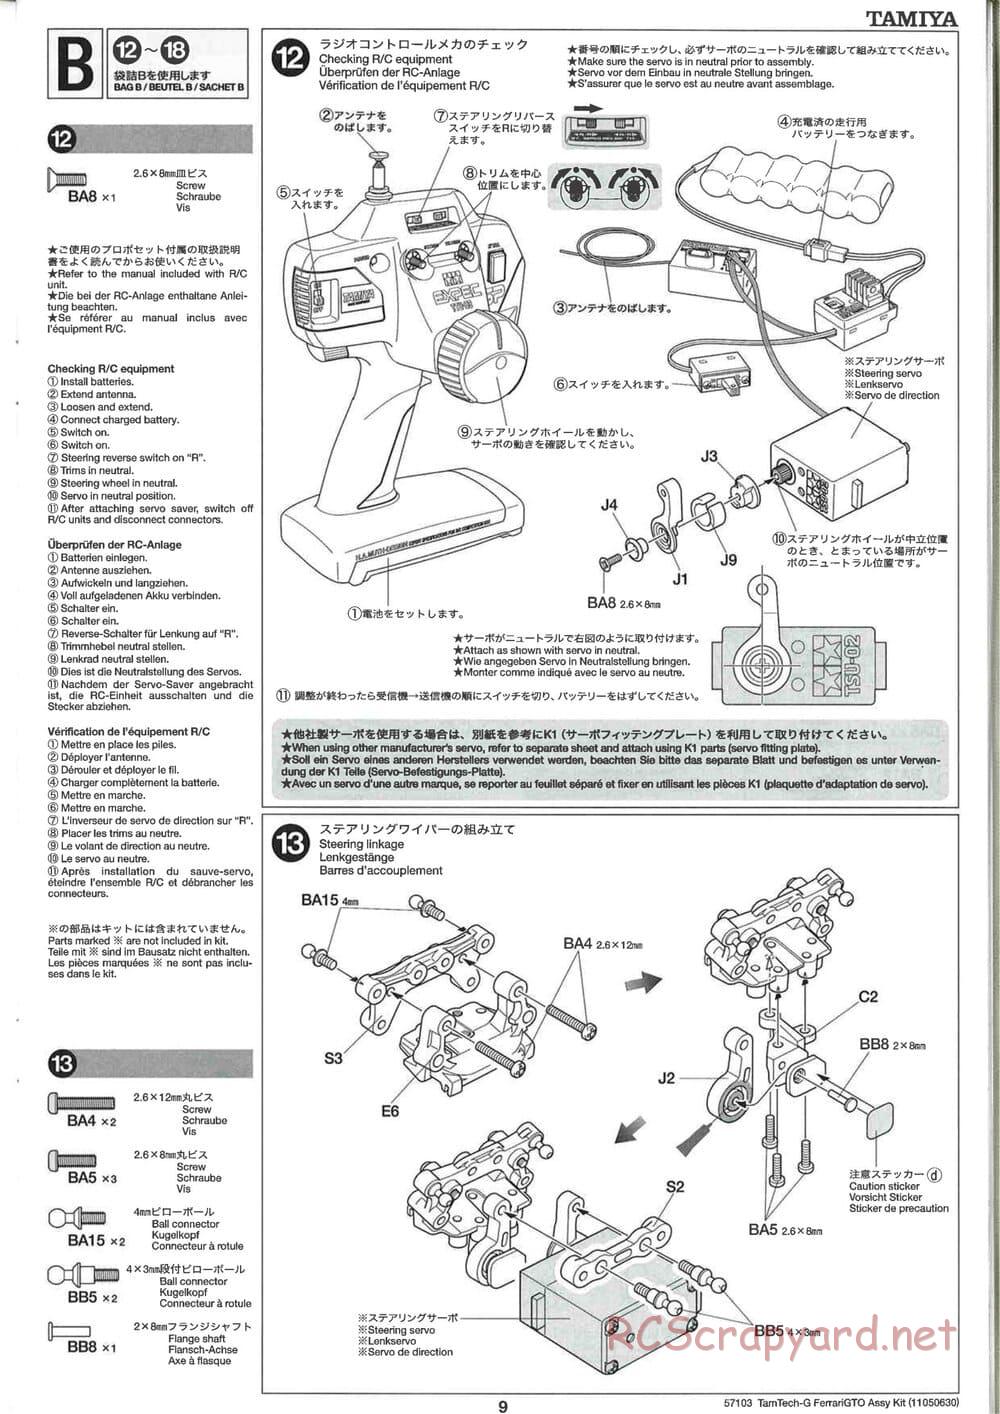 Tamiya - Ferrari 288 GTO - GT-01 Chassis - Manual - Page 9